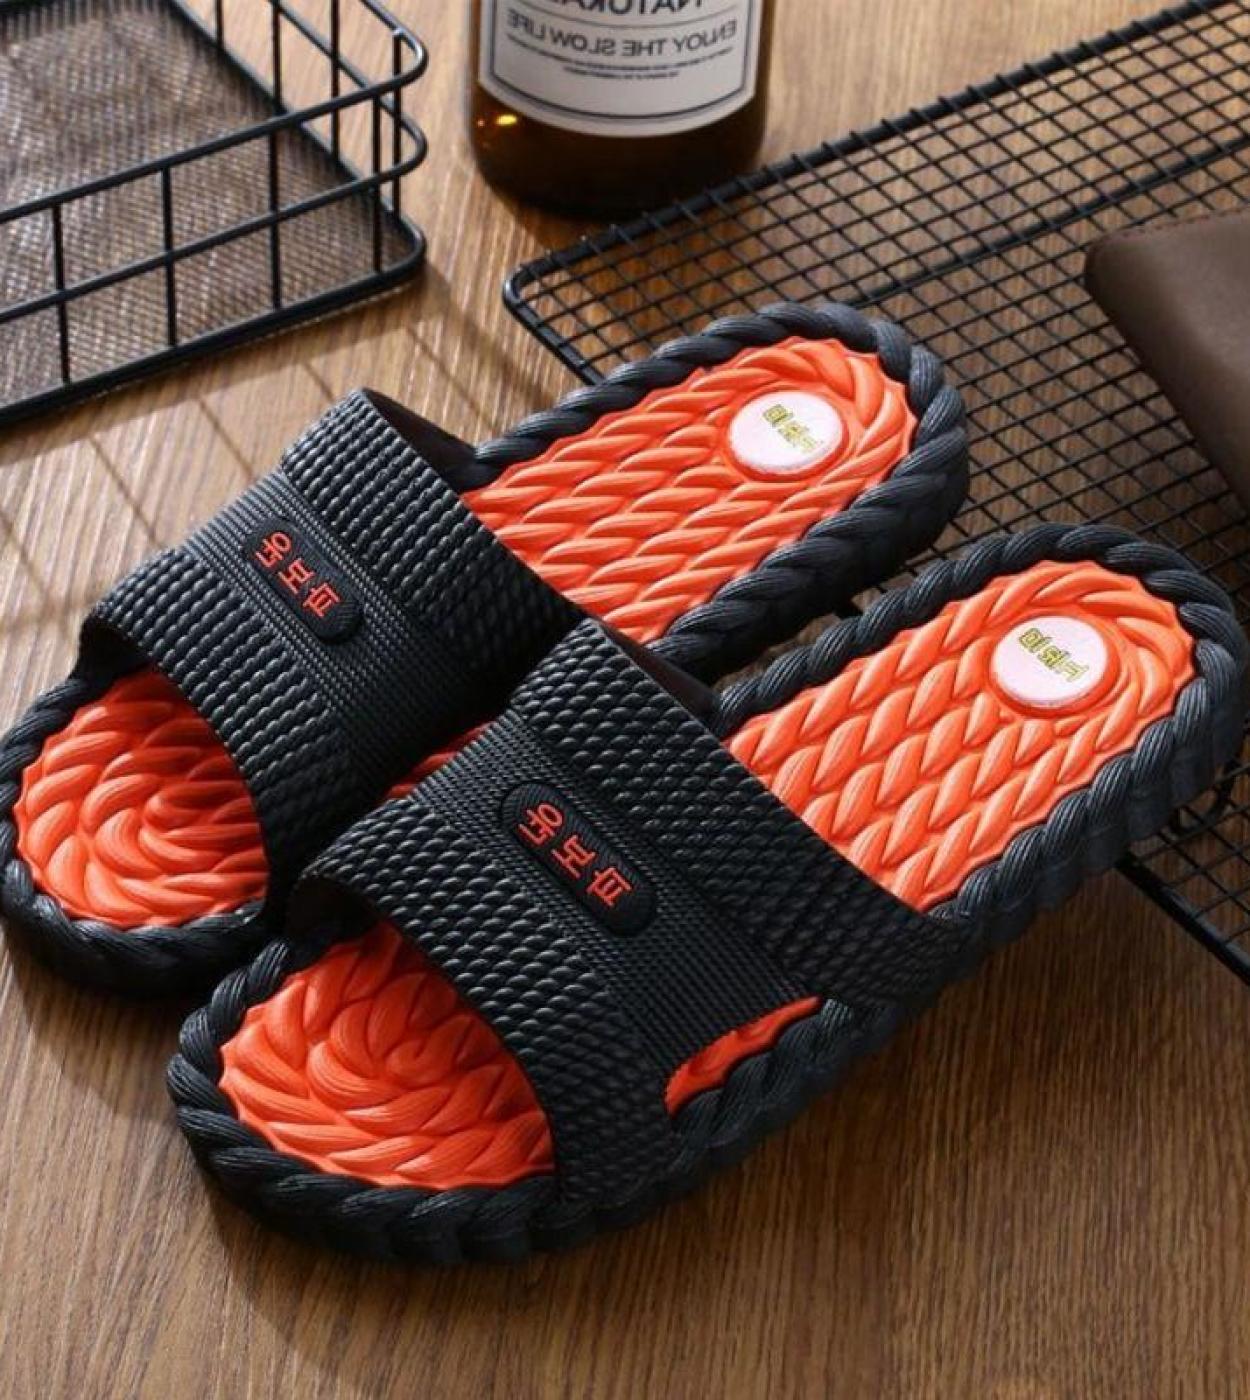 Men Thick Platform Slippers Summer Bottom Beach Sandals Women Leisure Soft Sole Indoor Bathroom Anti Skid Slippers Size